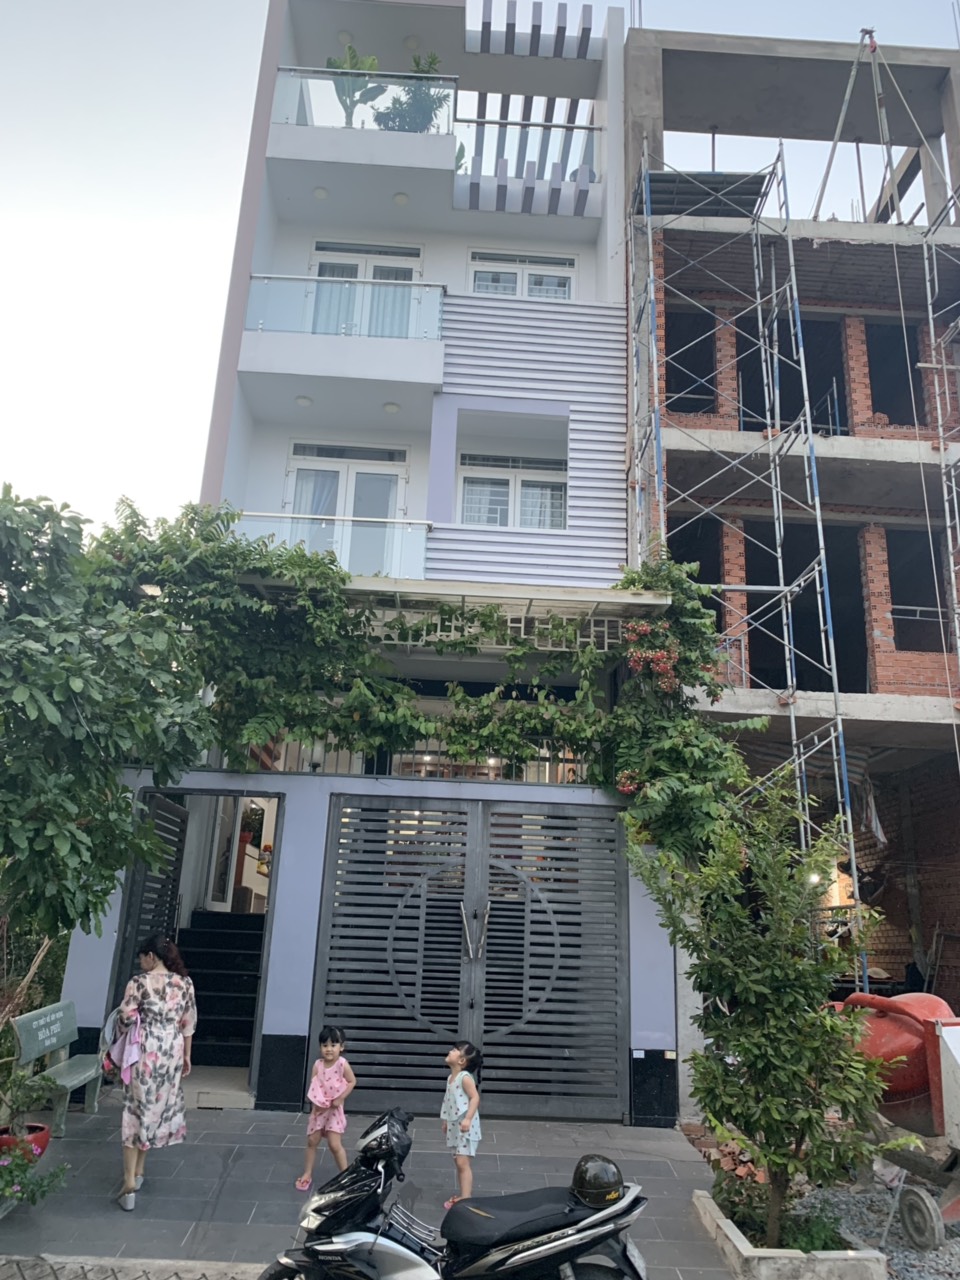 bán nhà đường Phạm Hùng, Quận 8. DT 5x20m, xây dựng 2018, Hầm, 4 lầu, nhà mới 100%, giá 8,5 tỷ